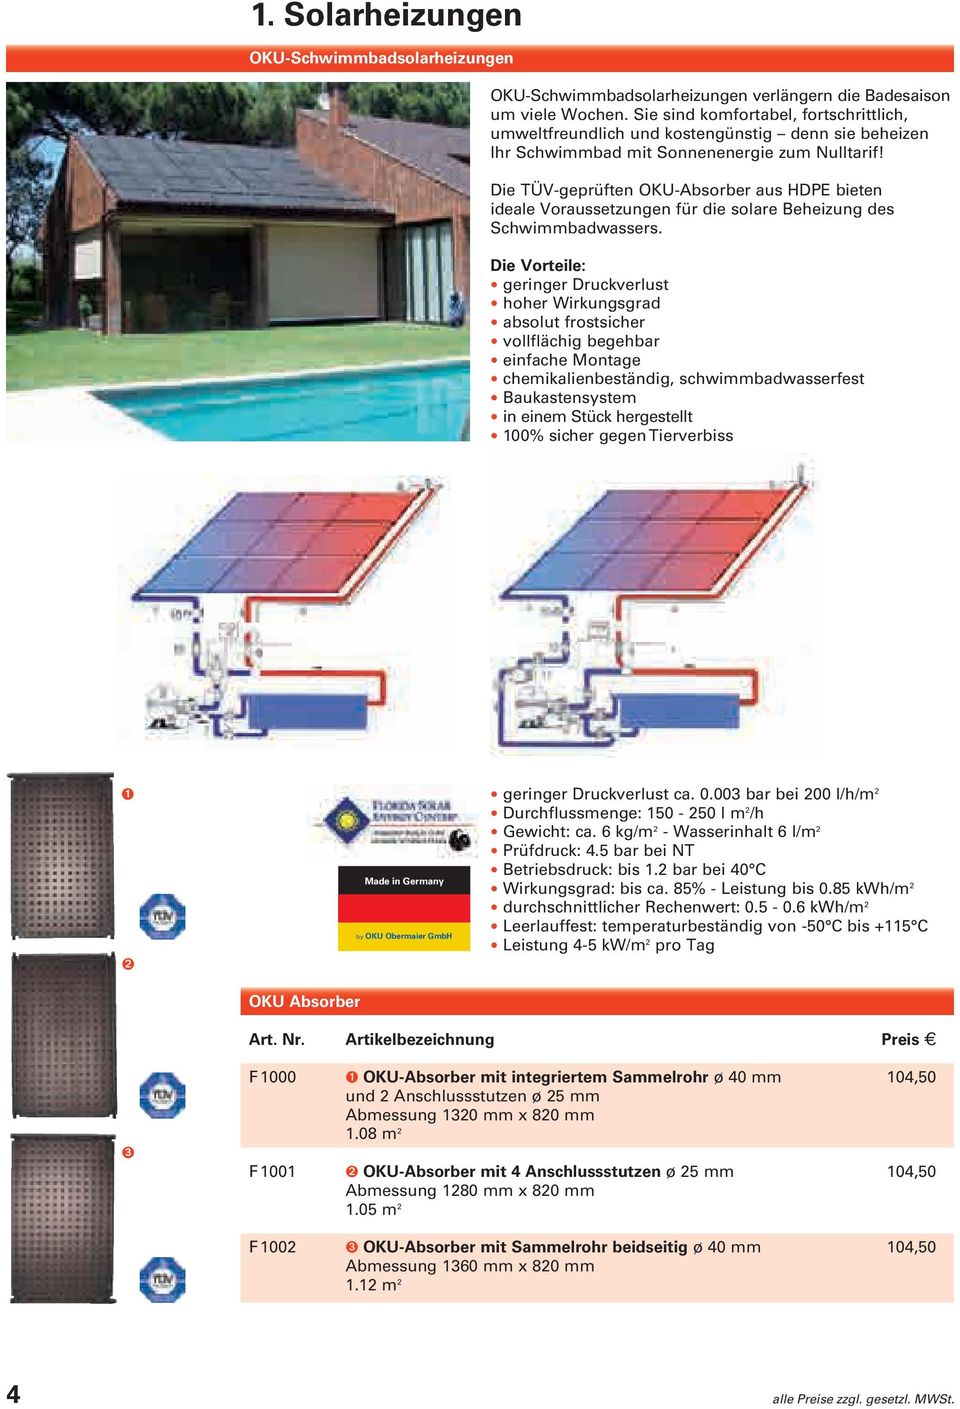 Die TÜV-geprüften OKU-Absorber aus HDPE bieten idea le Voraussetzungen für die solare Beheizung des Schwimmbadwassers.